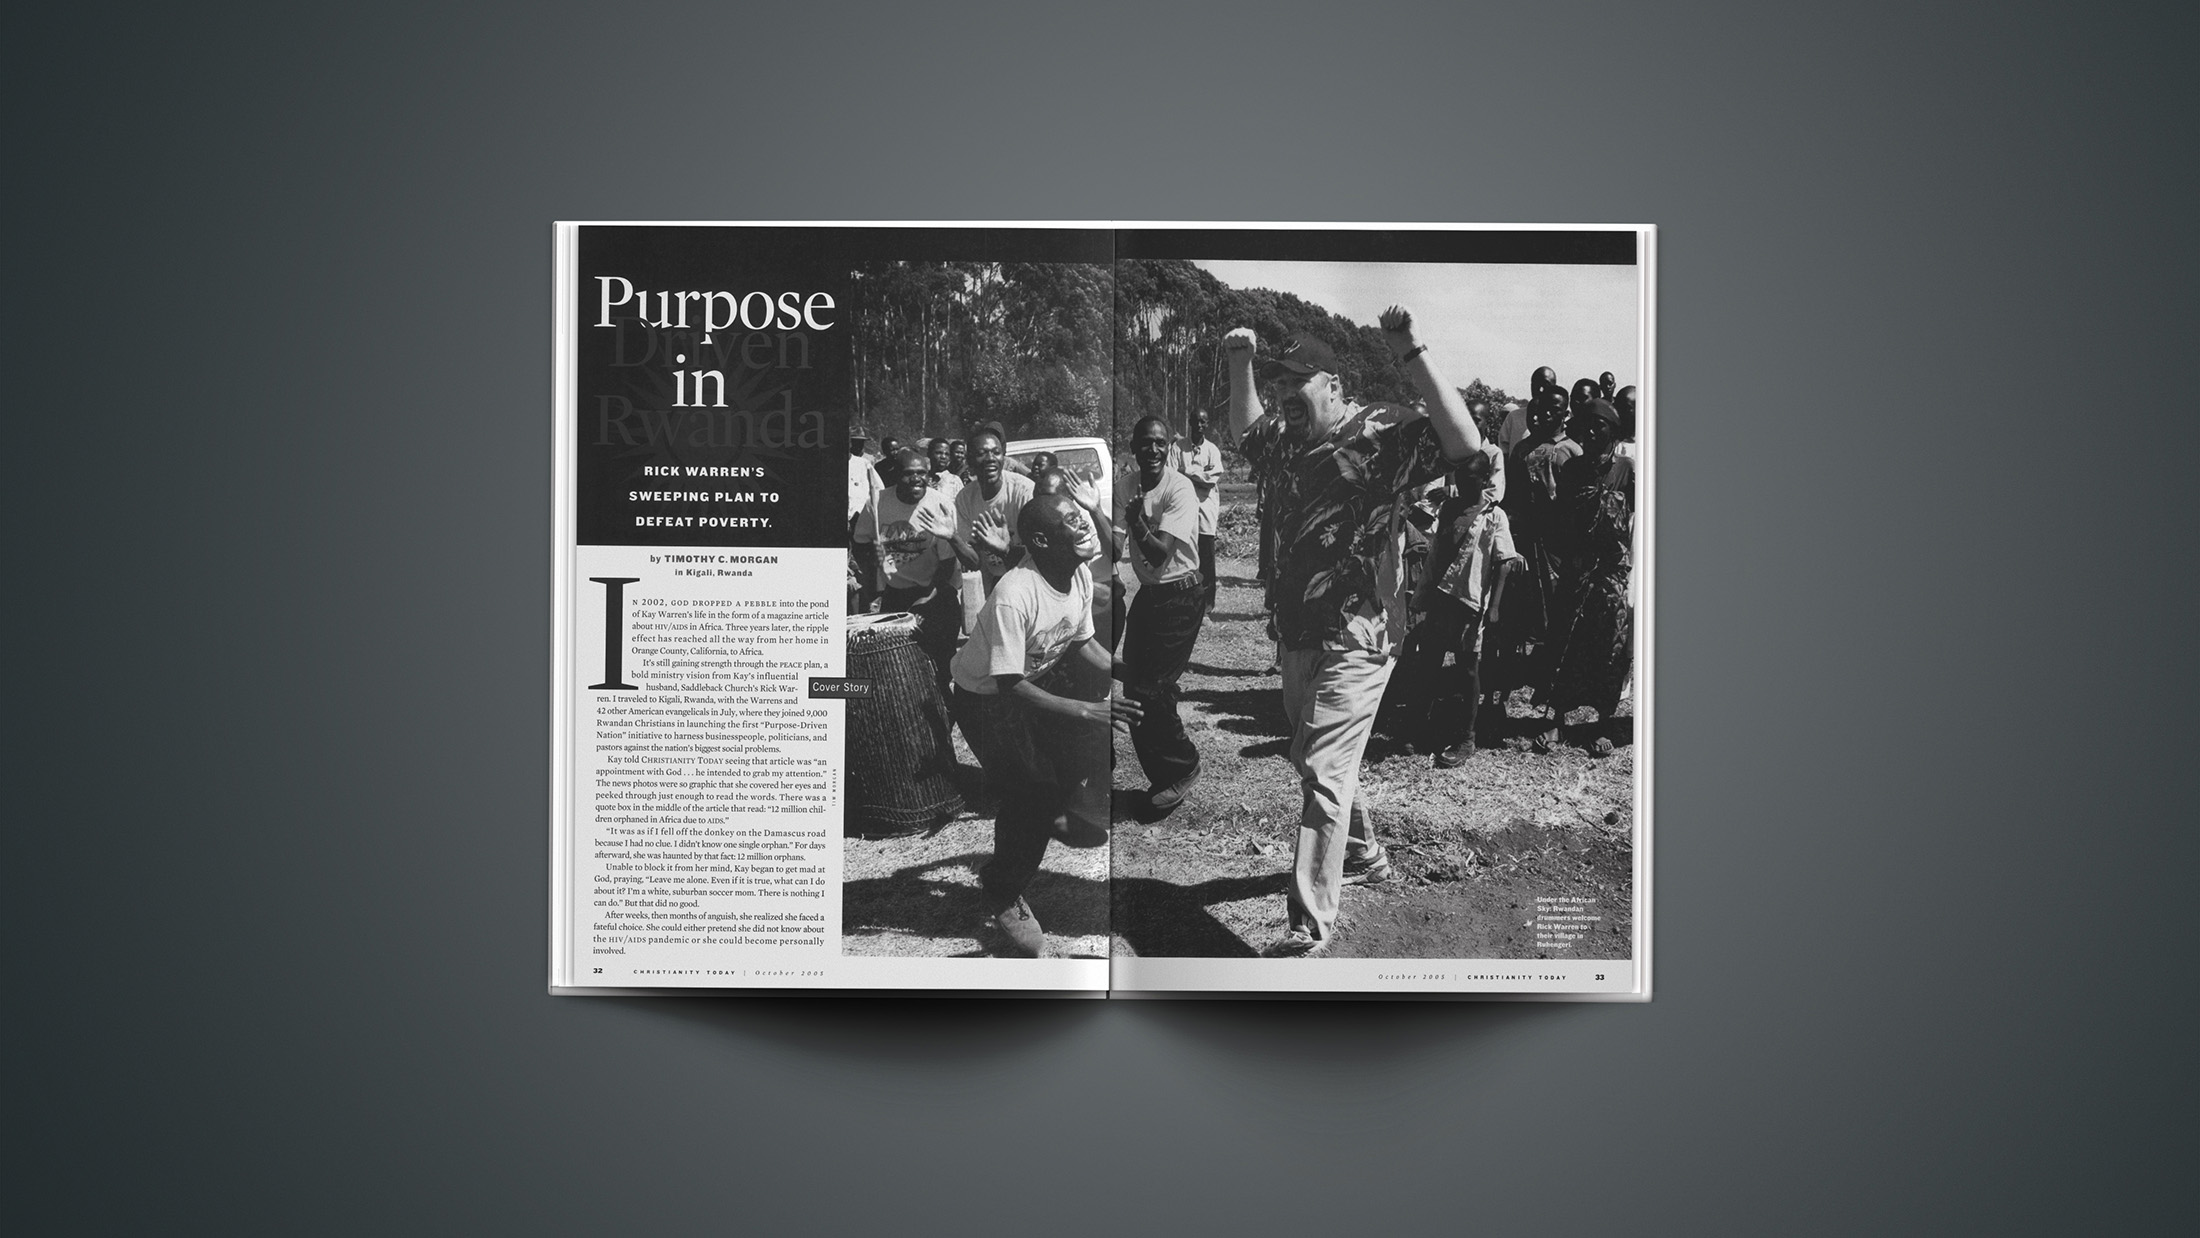 purpose driven life pdf bahasa indonesia kelas